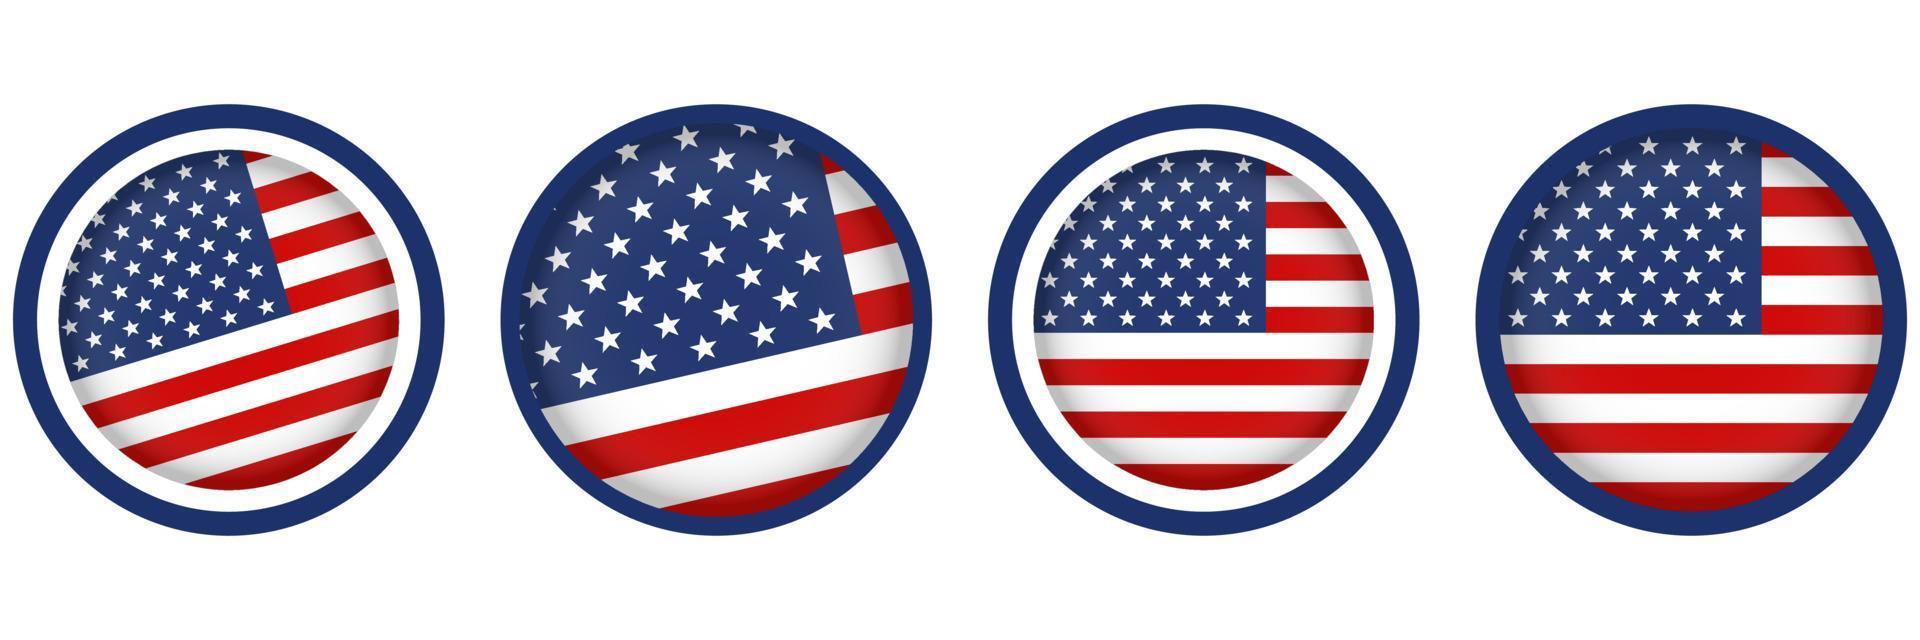 uppsättning av USA flaggor i modern cirkel stil vektor